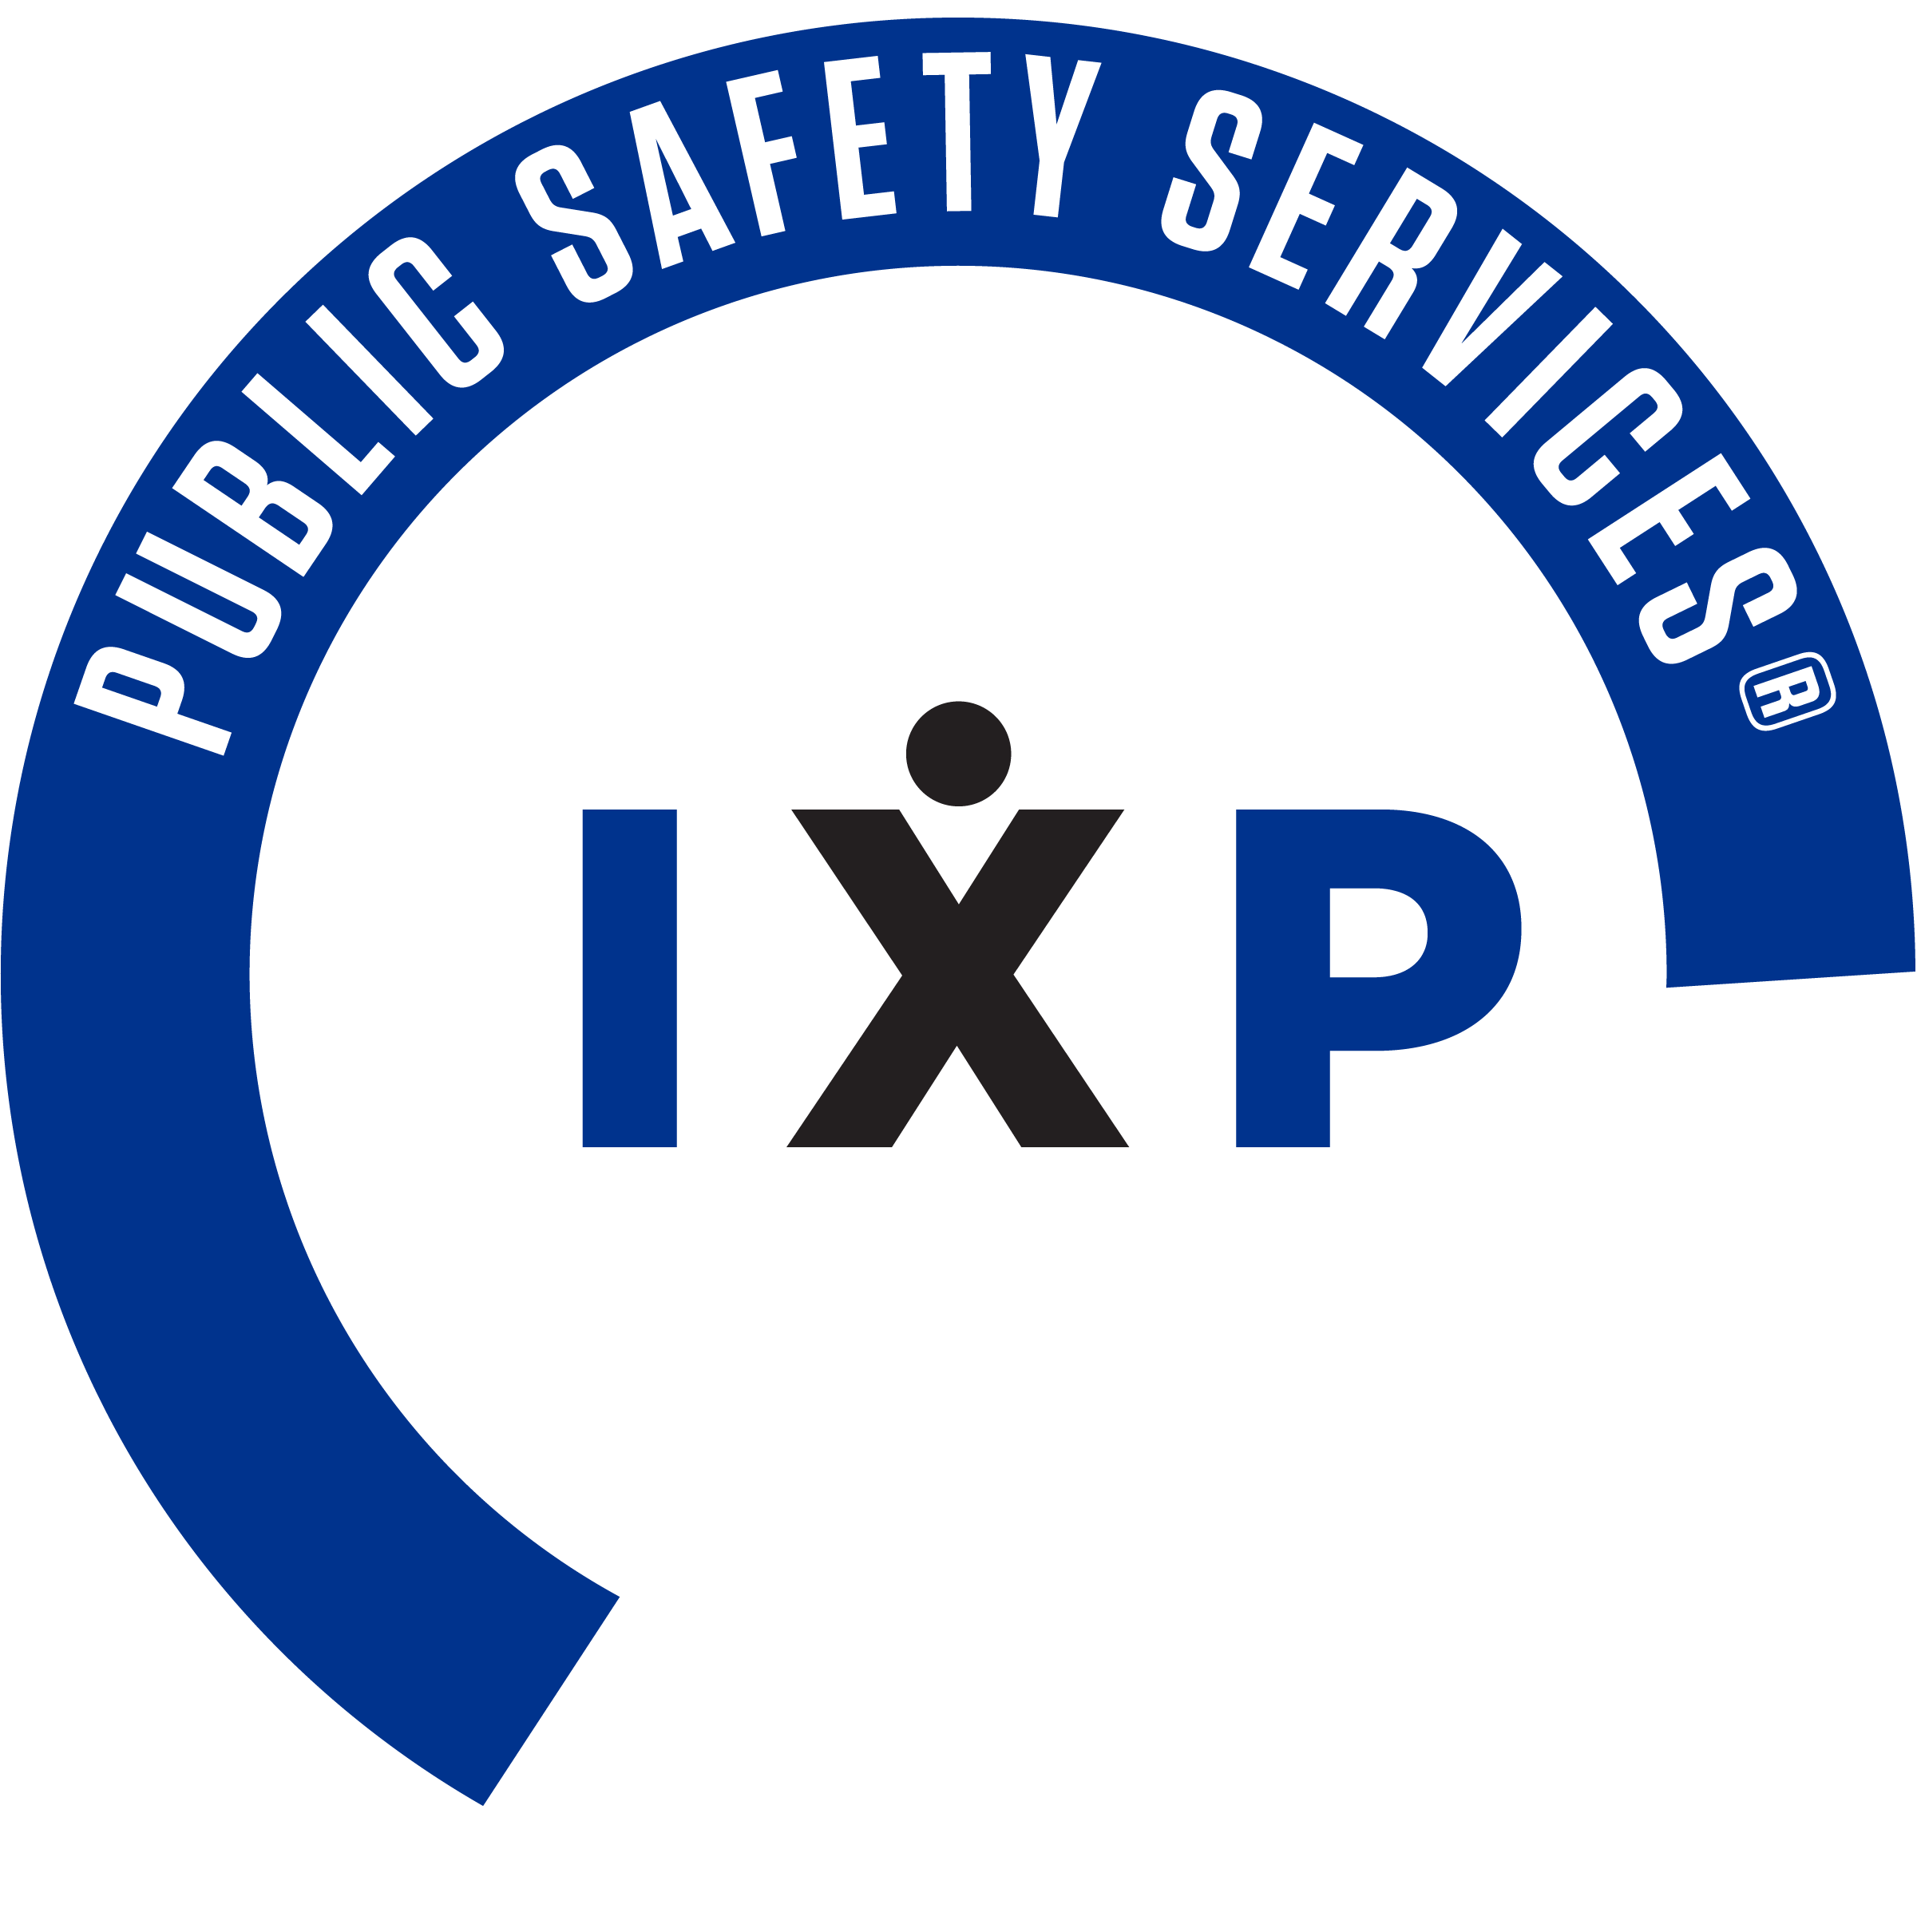 IXP Corporation